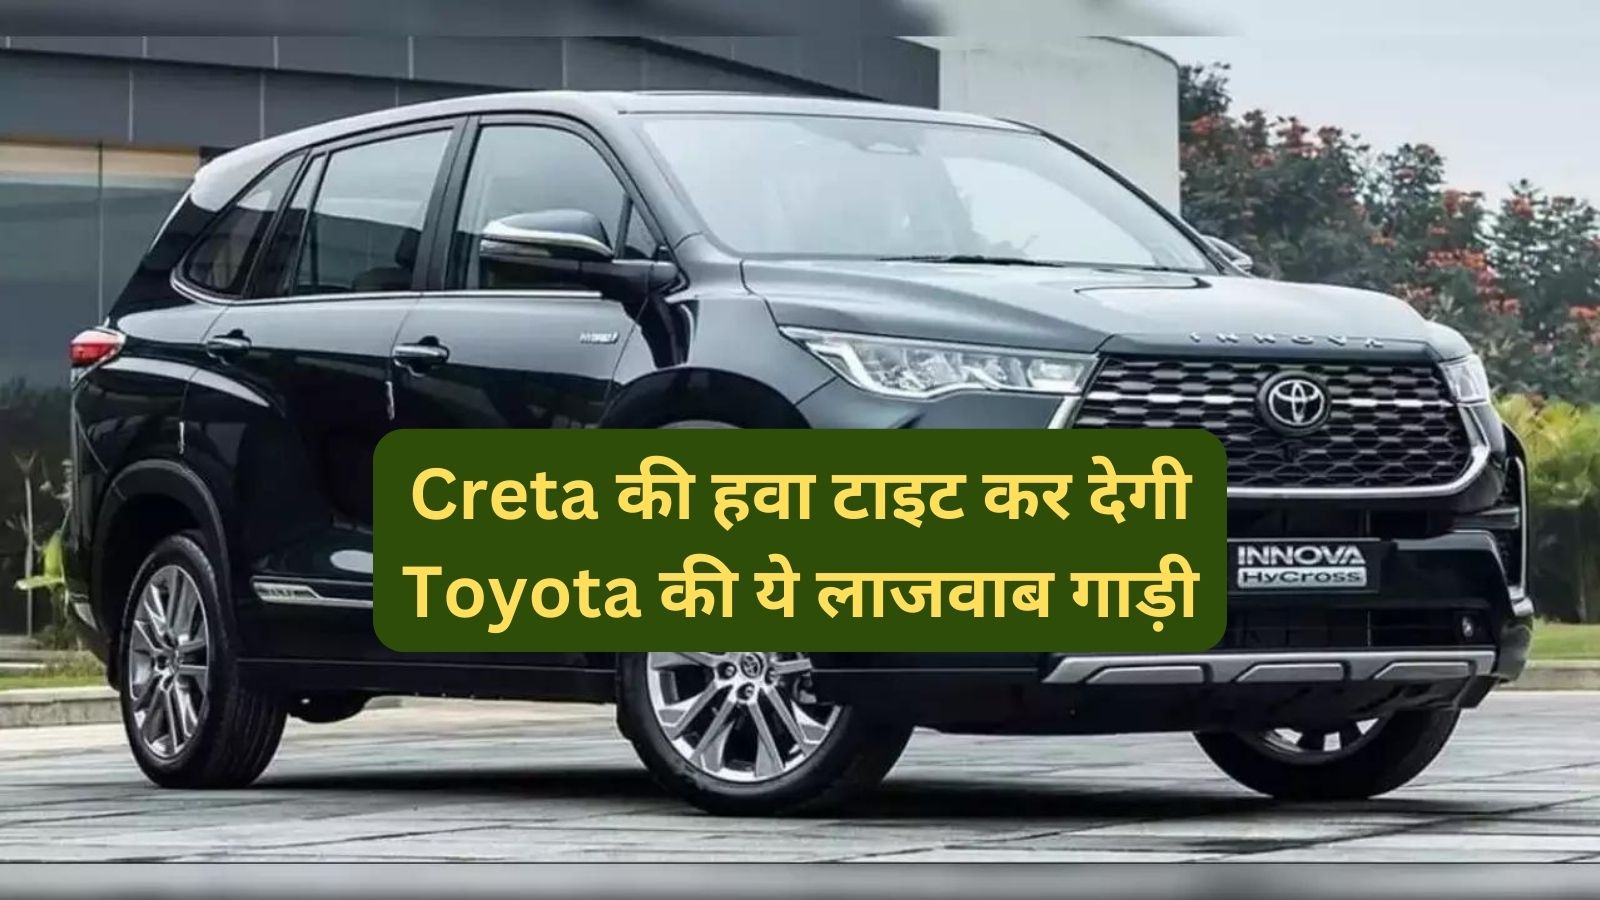 Toyota Innova Hycross:Creta की हवा टाइट कर देगी Toyota की ये लाजवाब गाड़ी,जानिए इसके फीचर्स और माइलेज के बारे मे